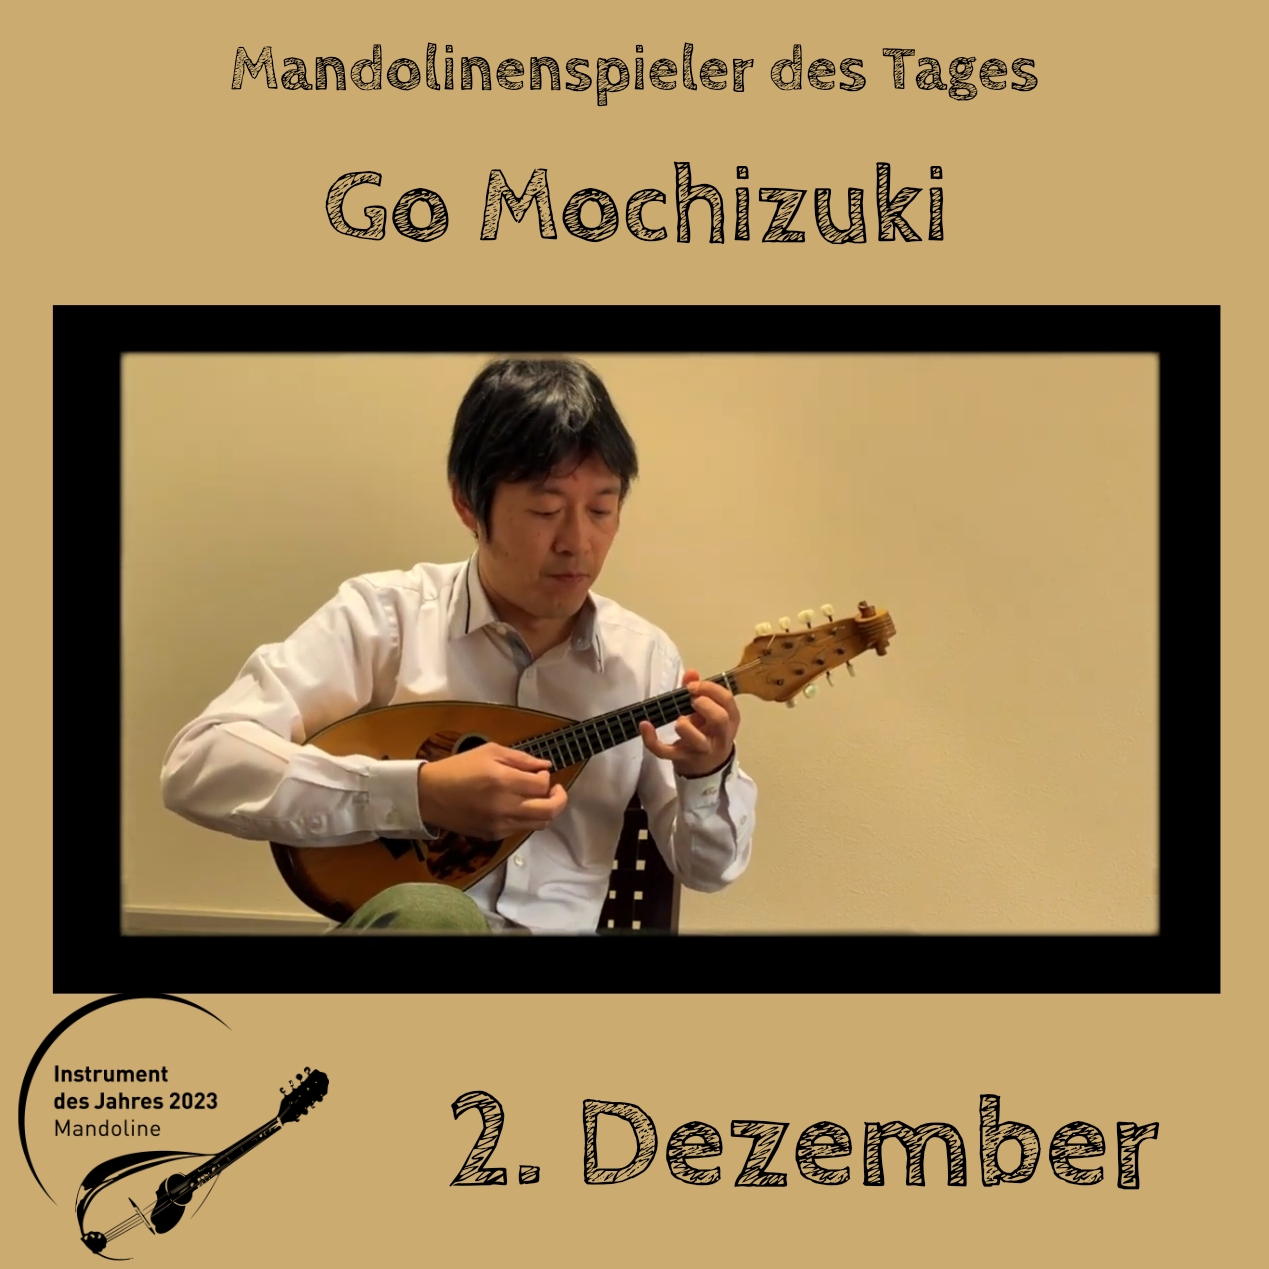 2. Dezember - Go Mochizuki Instrument des Jahres 2023 Mandolinenspieler Mandolinenspielerin des Tages